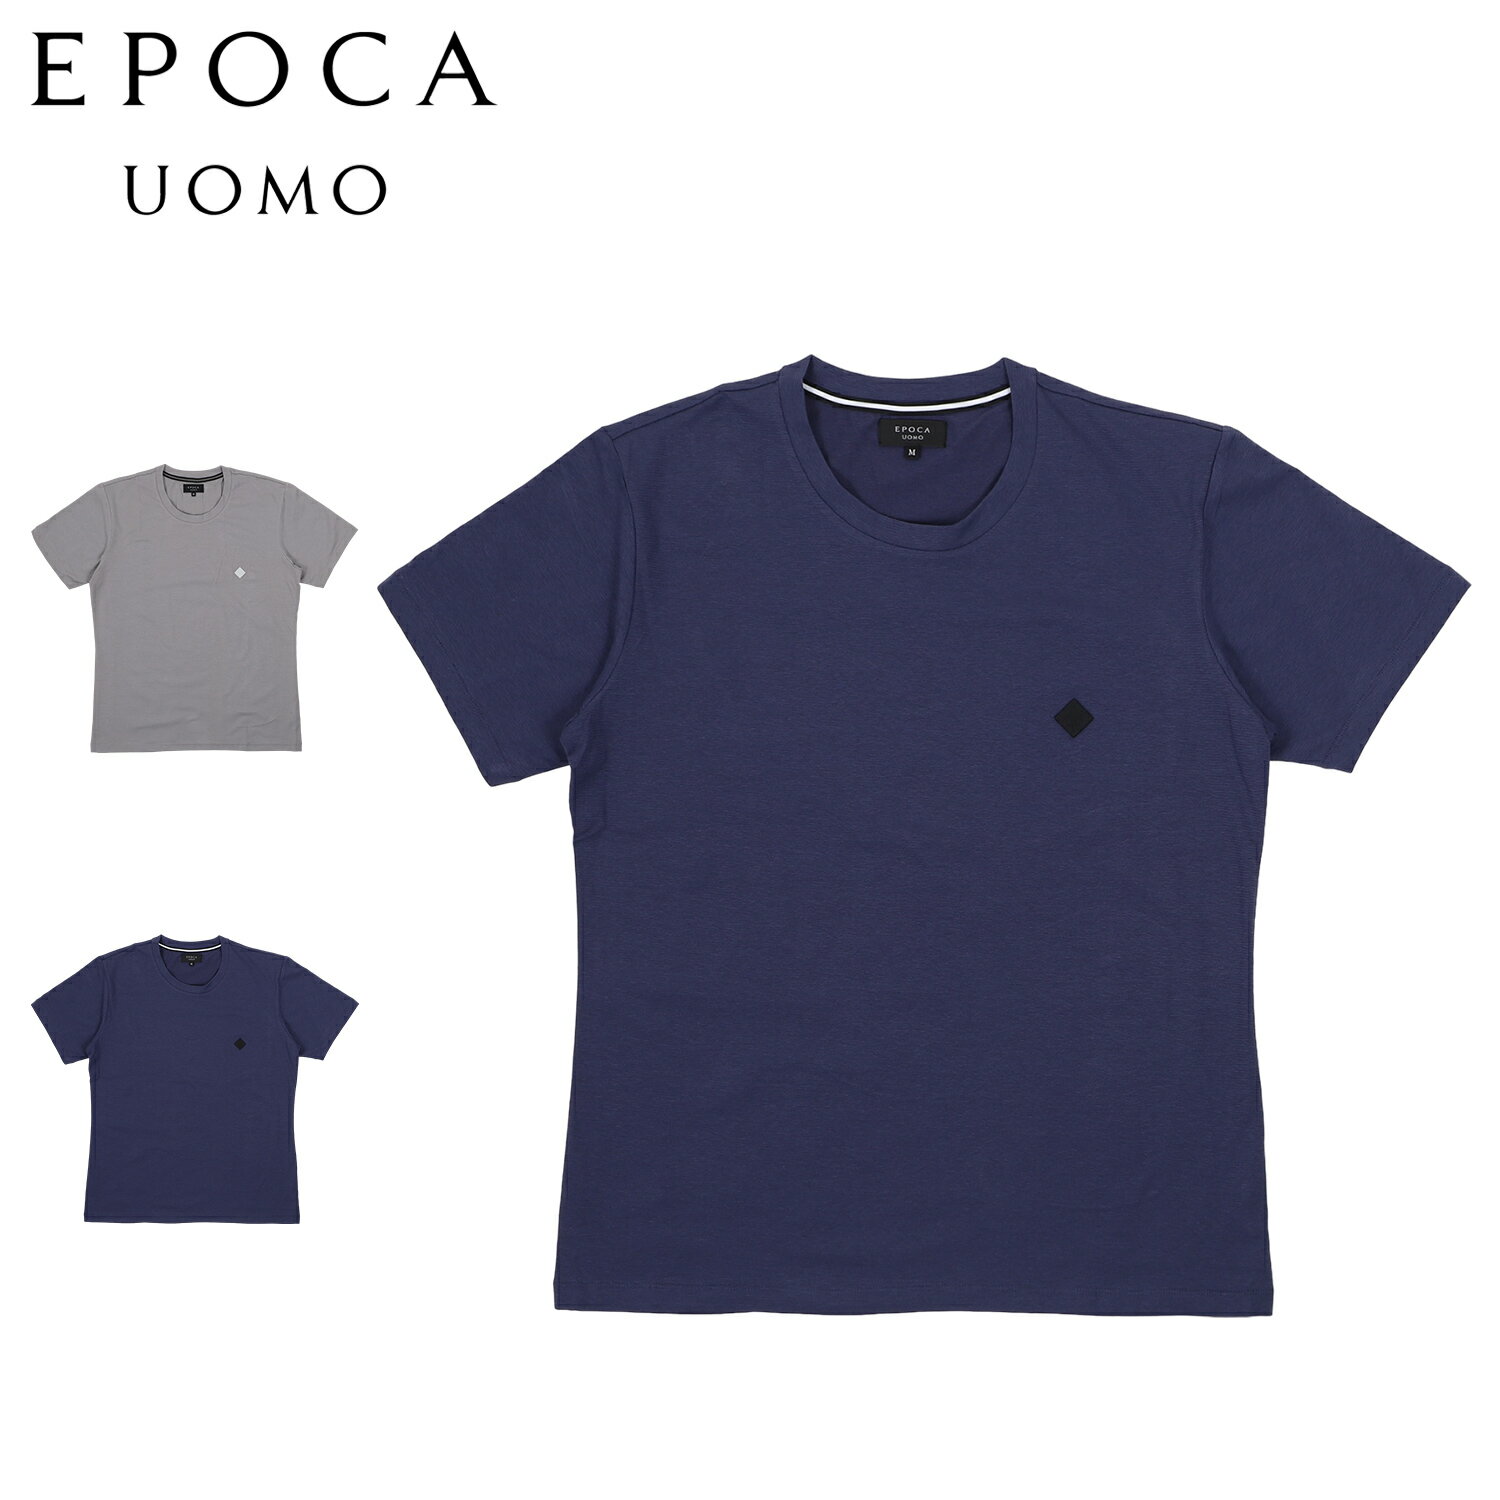 エポカ ウォモ EPOCA UOMO ポロシャツ 半袖 ボタンダウン ルームウェア 部屋着 メンズ ボーダー クルーネック グレー ネイビー 0416-35